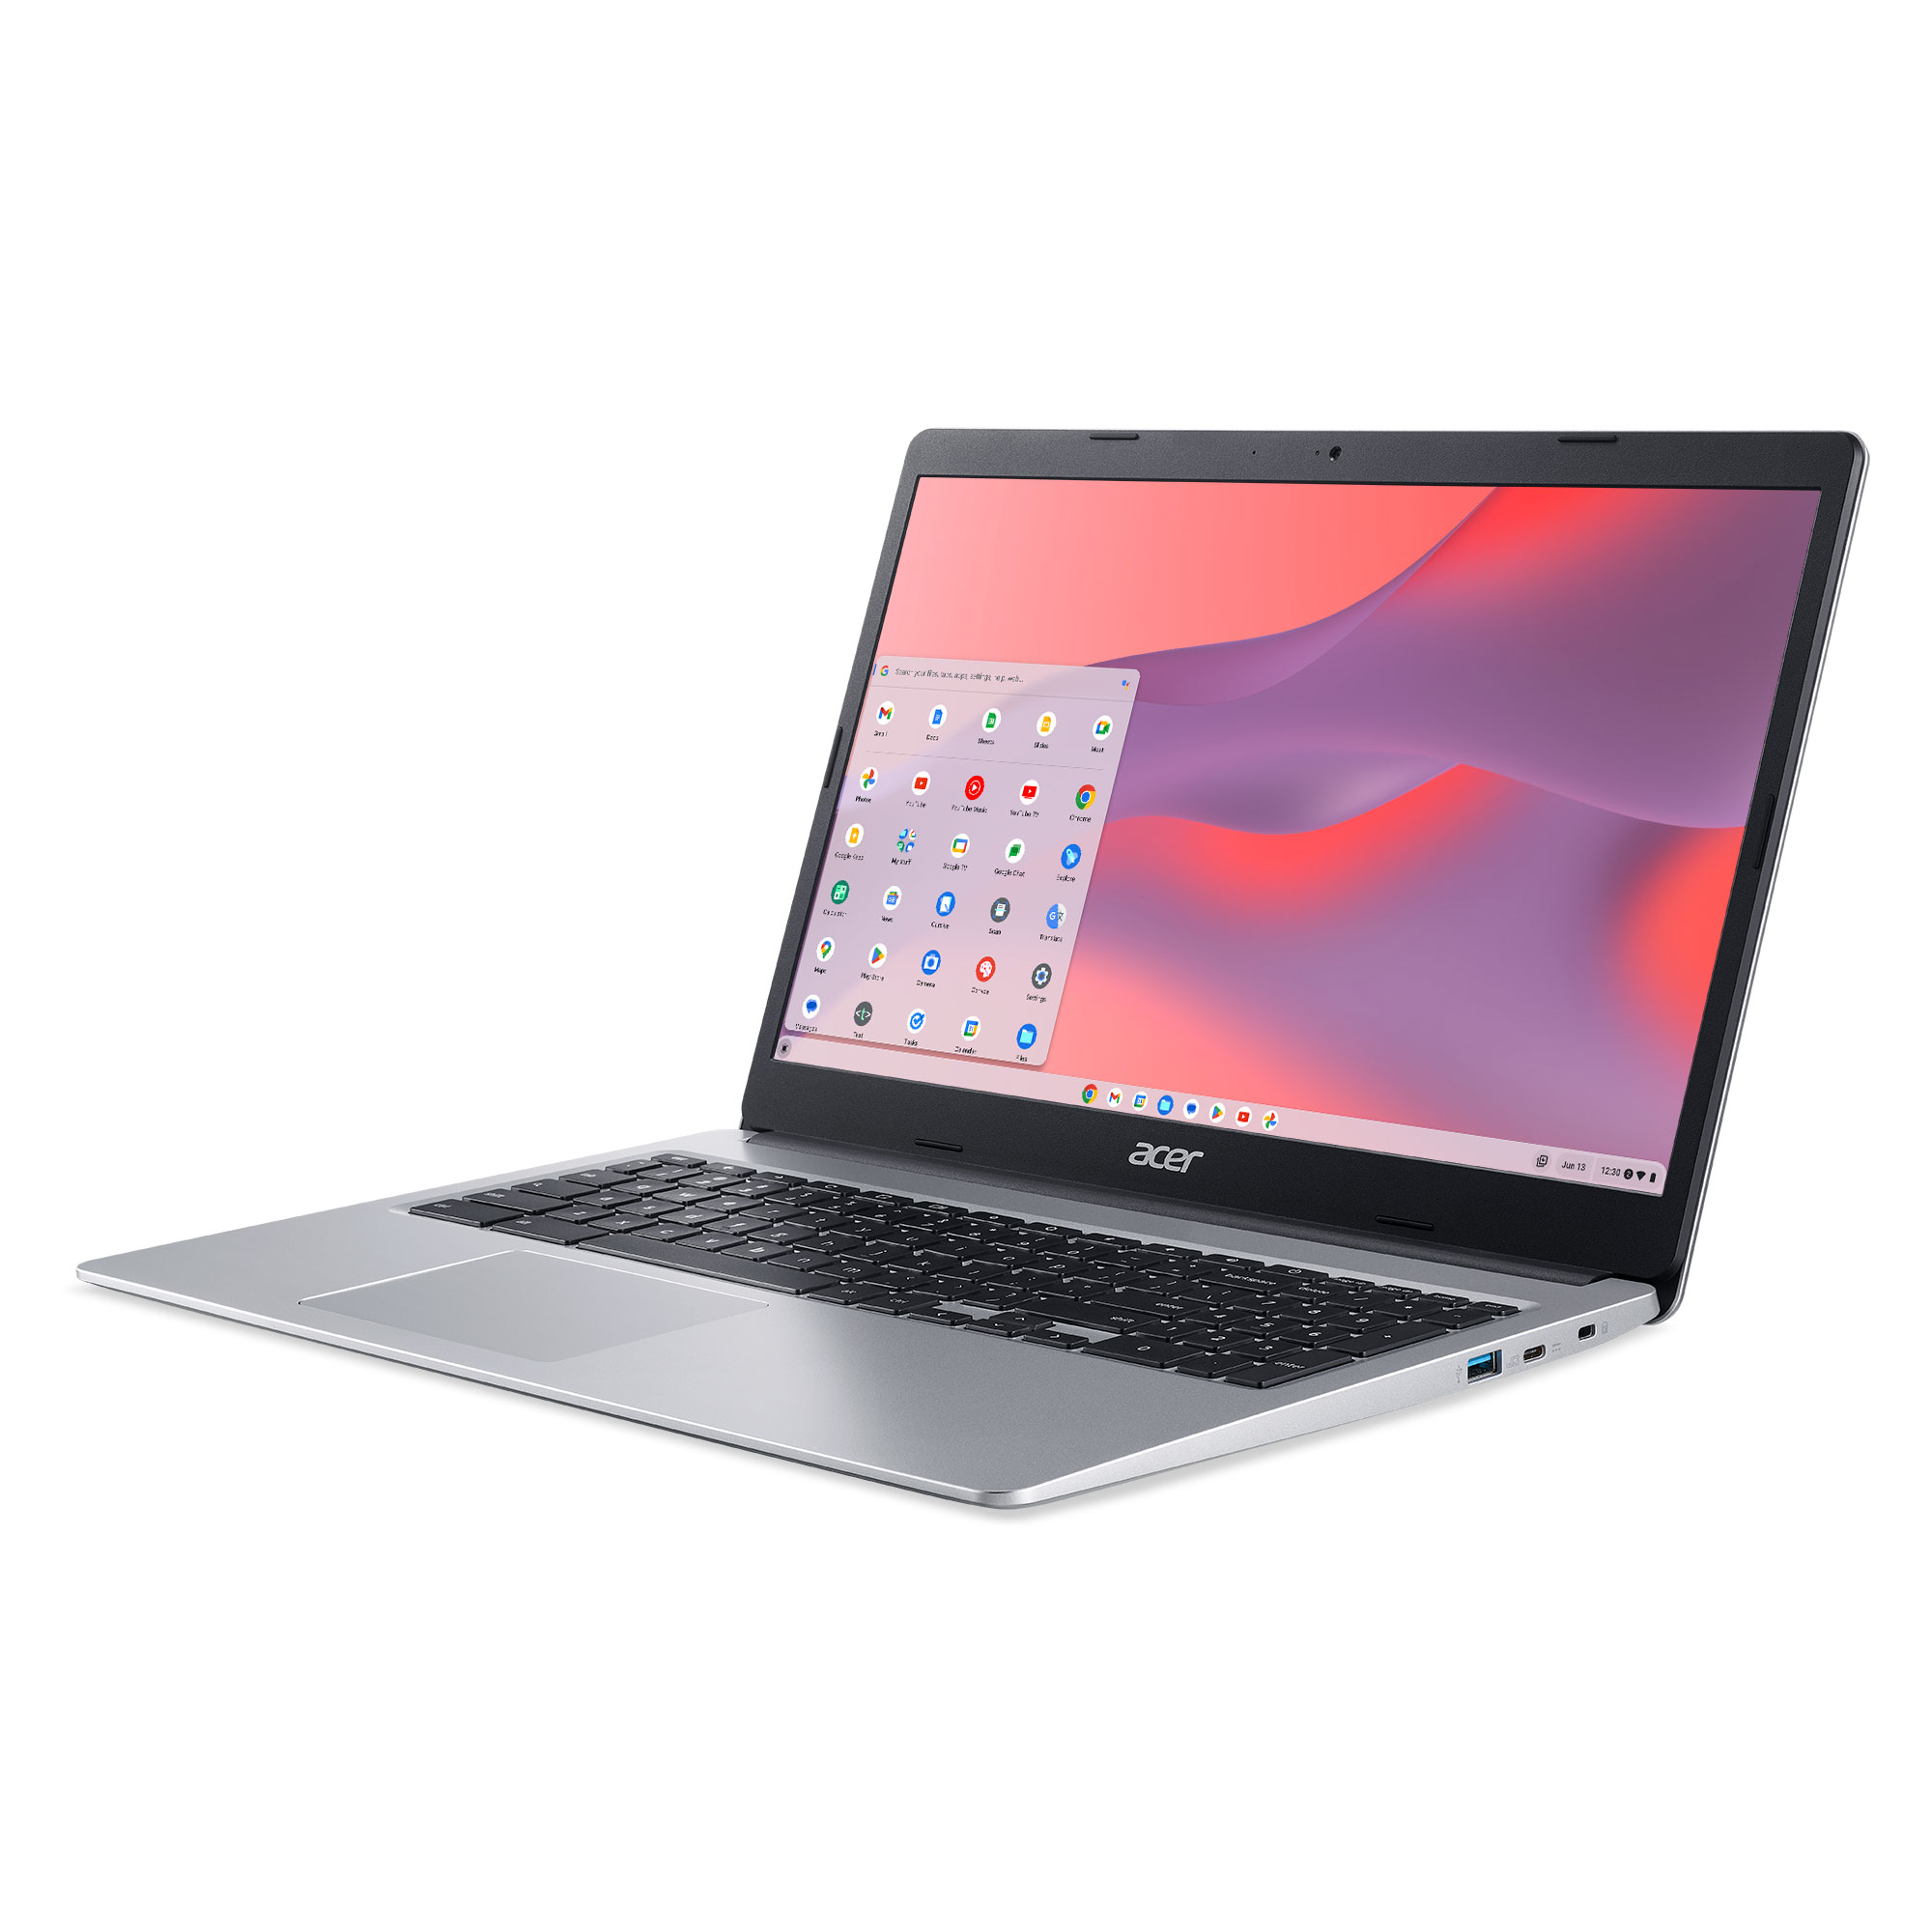 Acer Chromebook 315 (2019), 15.6" HD, Intel Celeron N4020, 4GB RAM, 64GB eMMC, Silver, CB315-3H-C19A - image 4 of 5